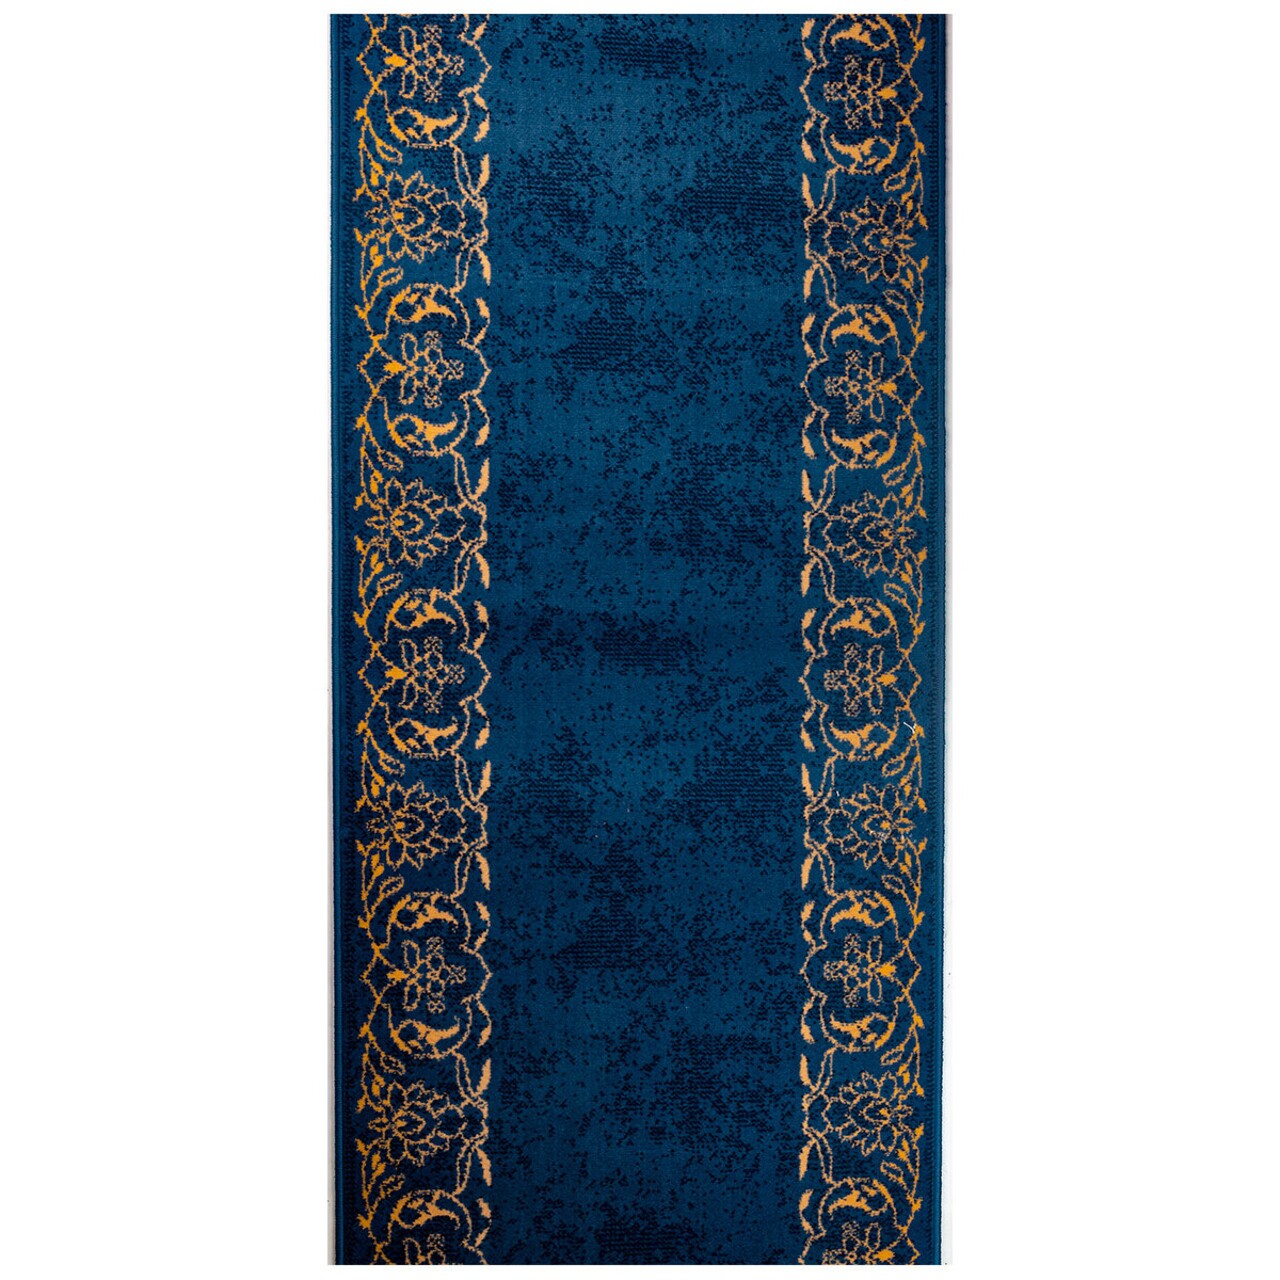 Masali Előszoba szőnyeg, Decorino, 80x200 cm, polipropilén, kék